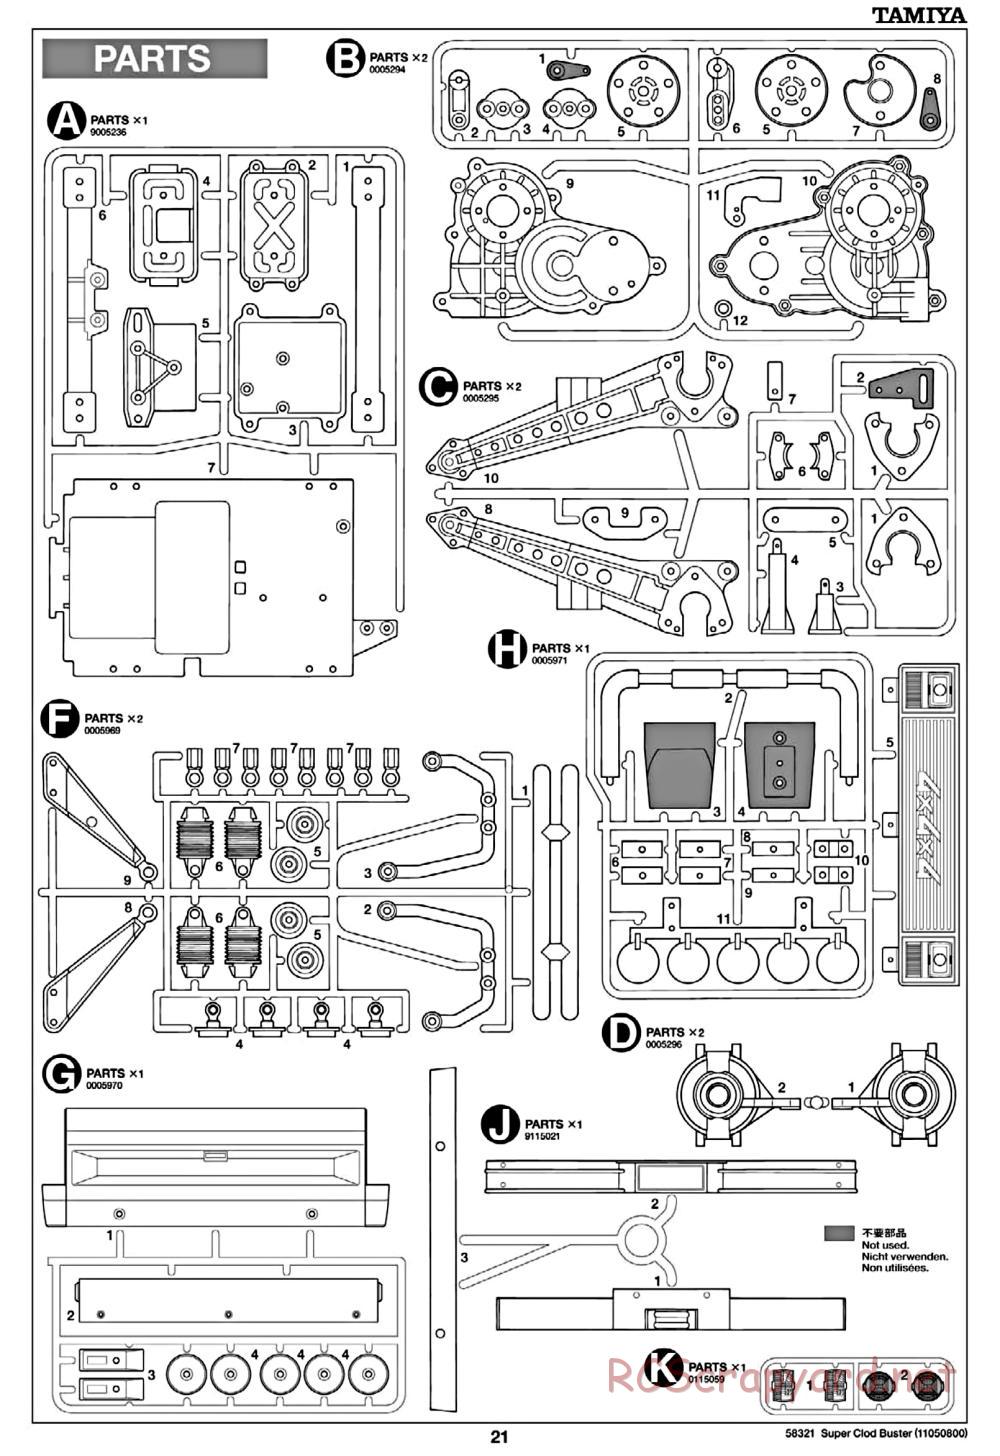 Tamiya - Super Clod Buster Chassis - Manual - Page 21